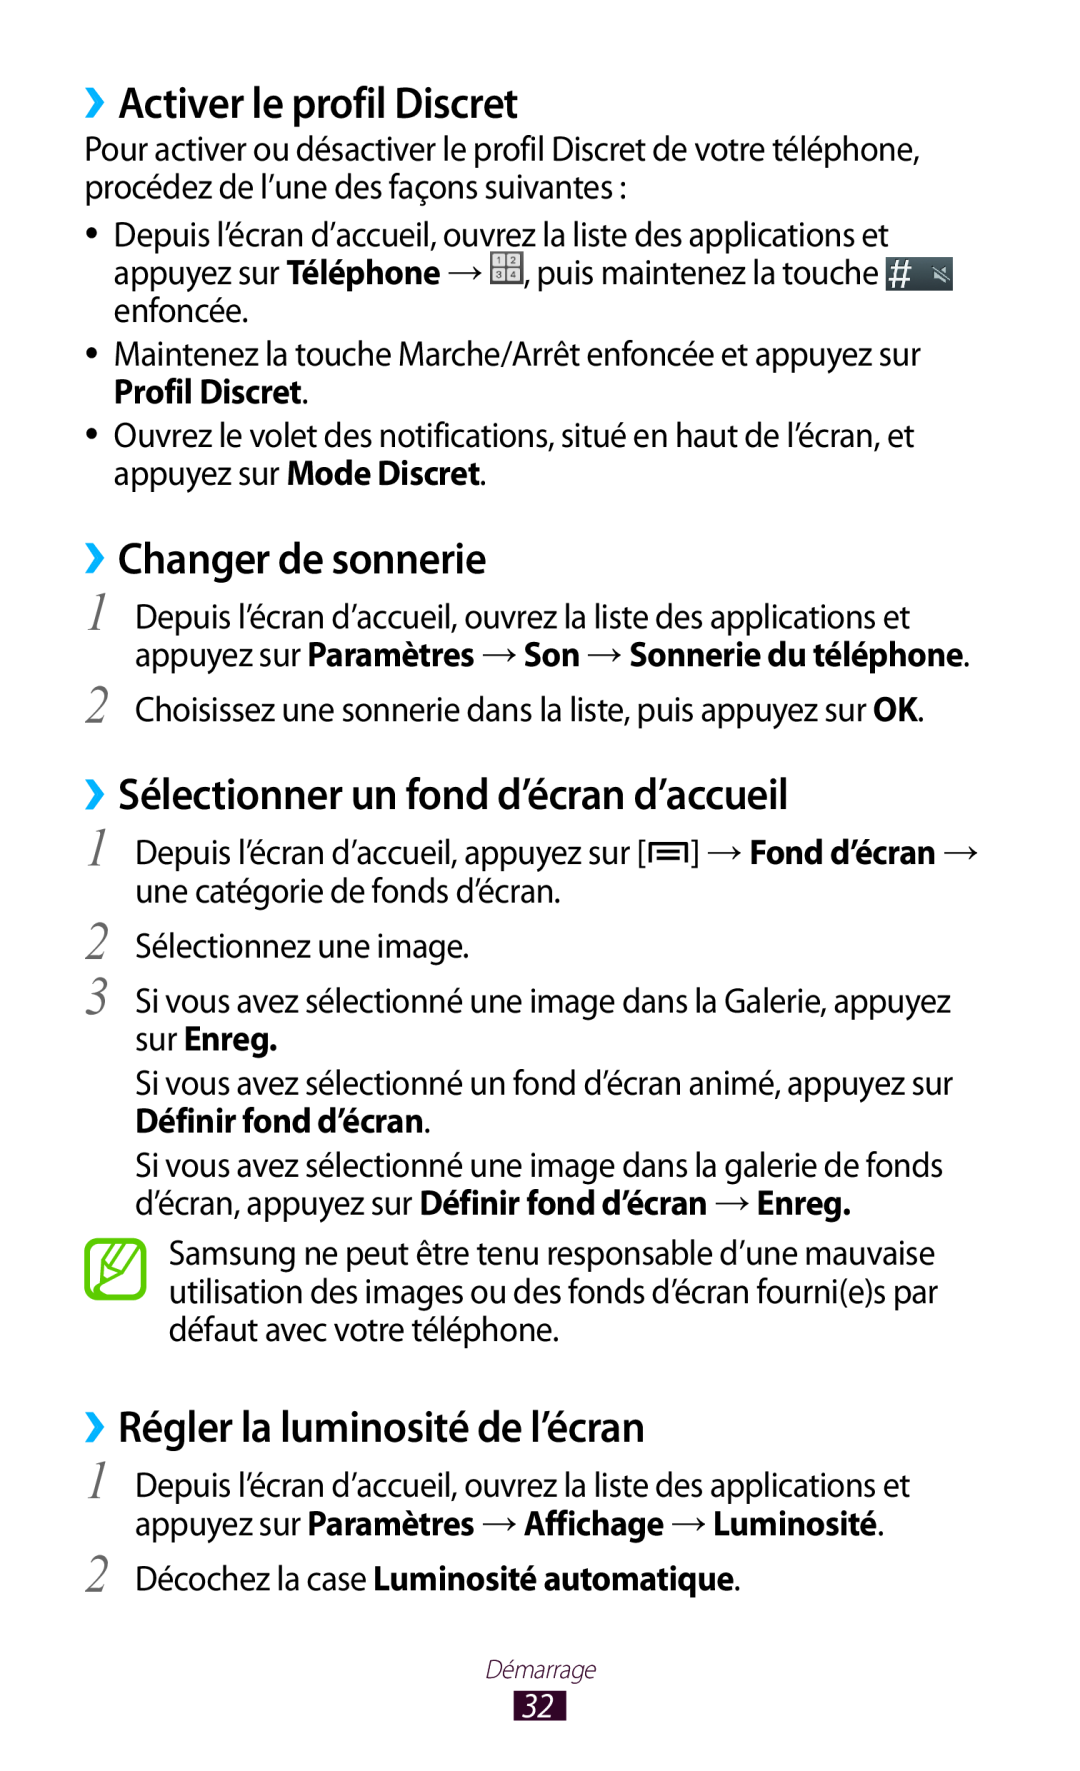 Samsung GT-N7000ZIABOG manual ››Activer le profil Discret, ››Changer de sonnerie, ››Sélectionner un fond d’écran d’accueil 